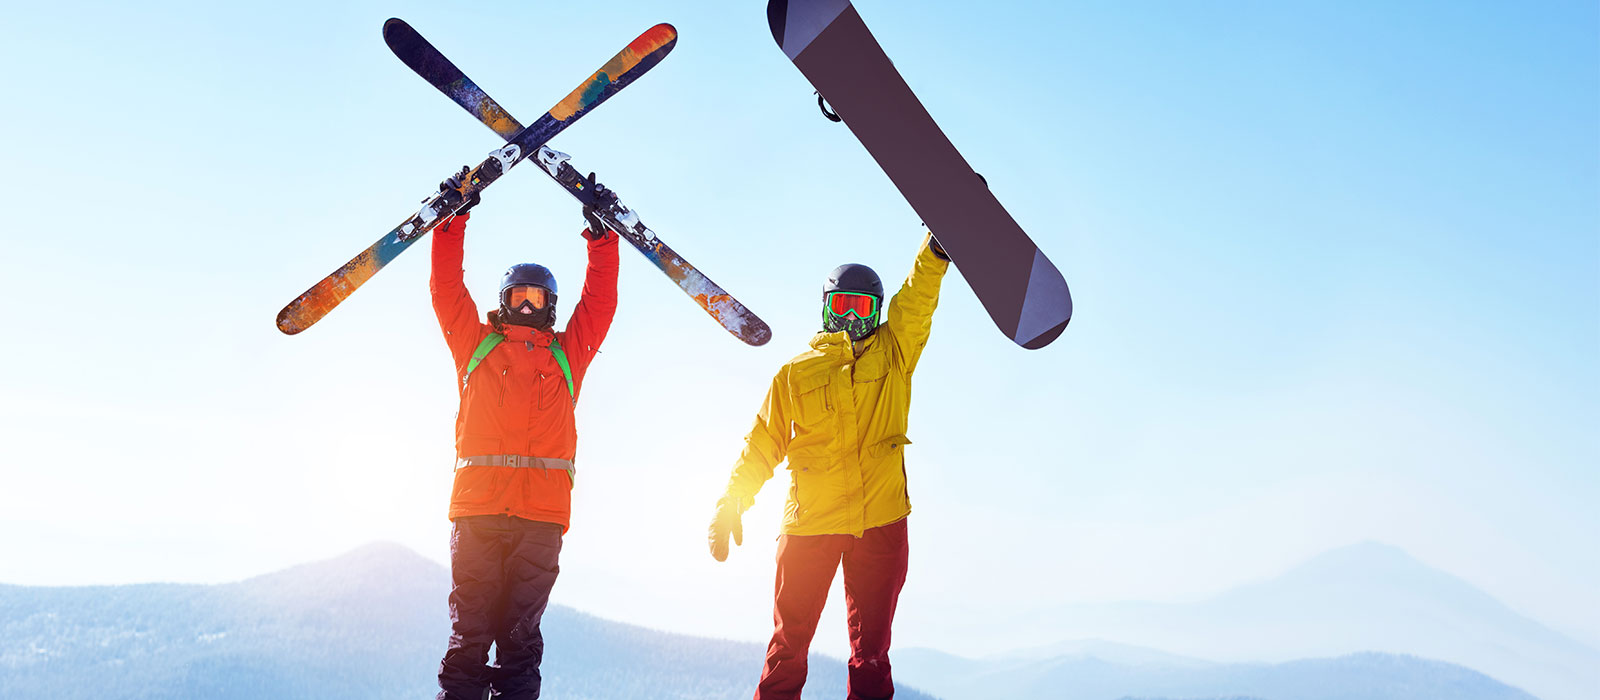 skifahren-snowboardfahren.jpg